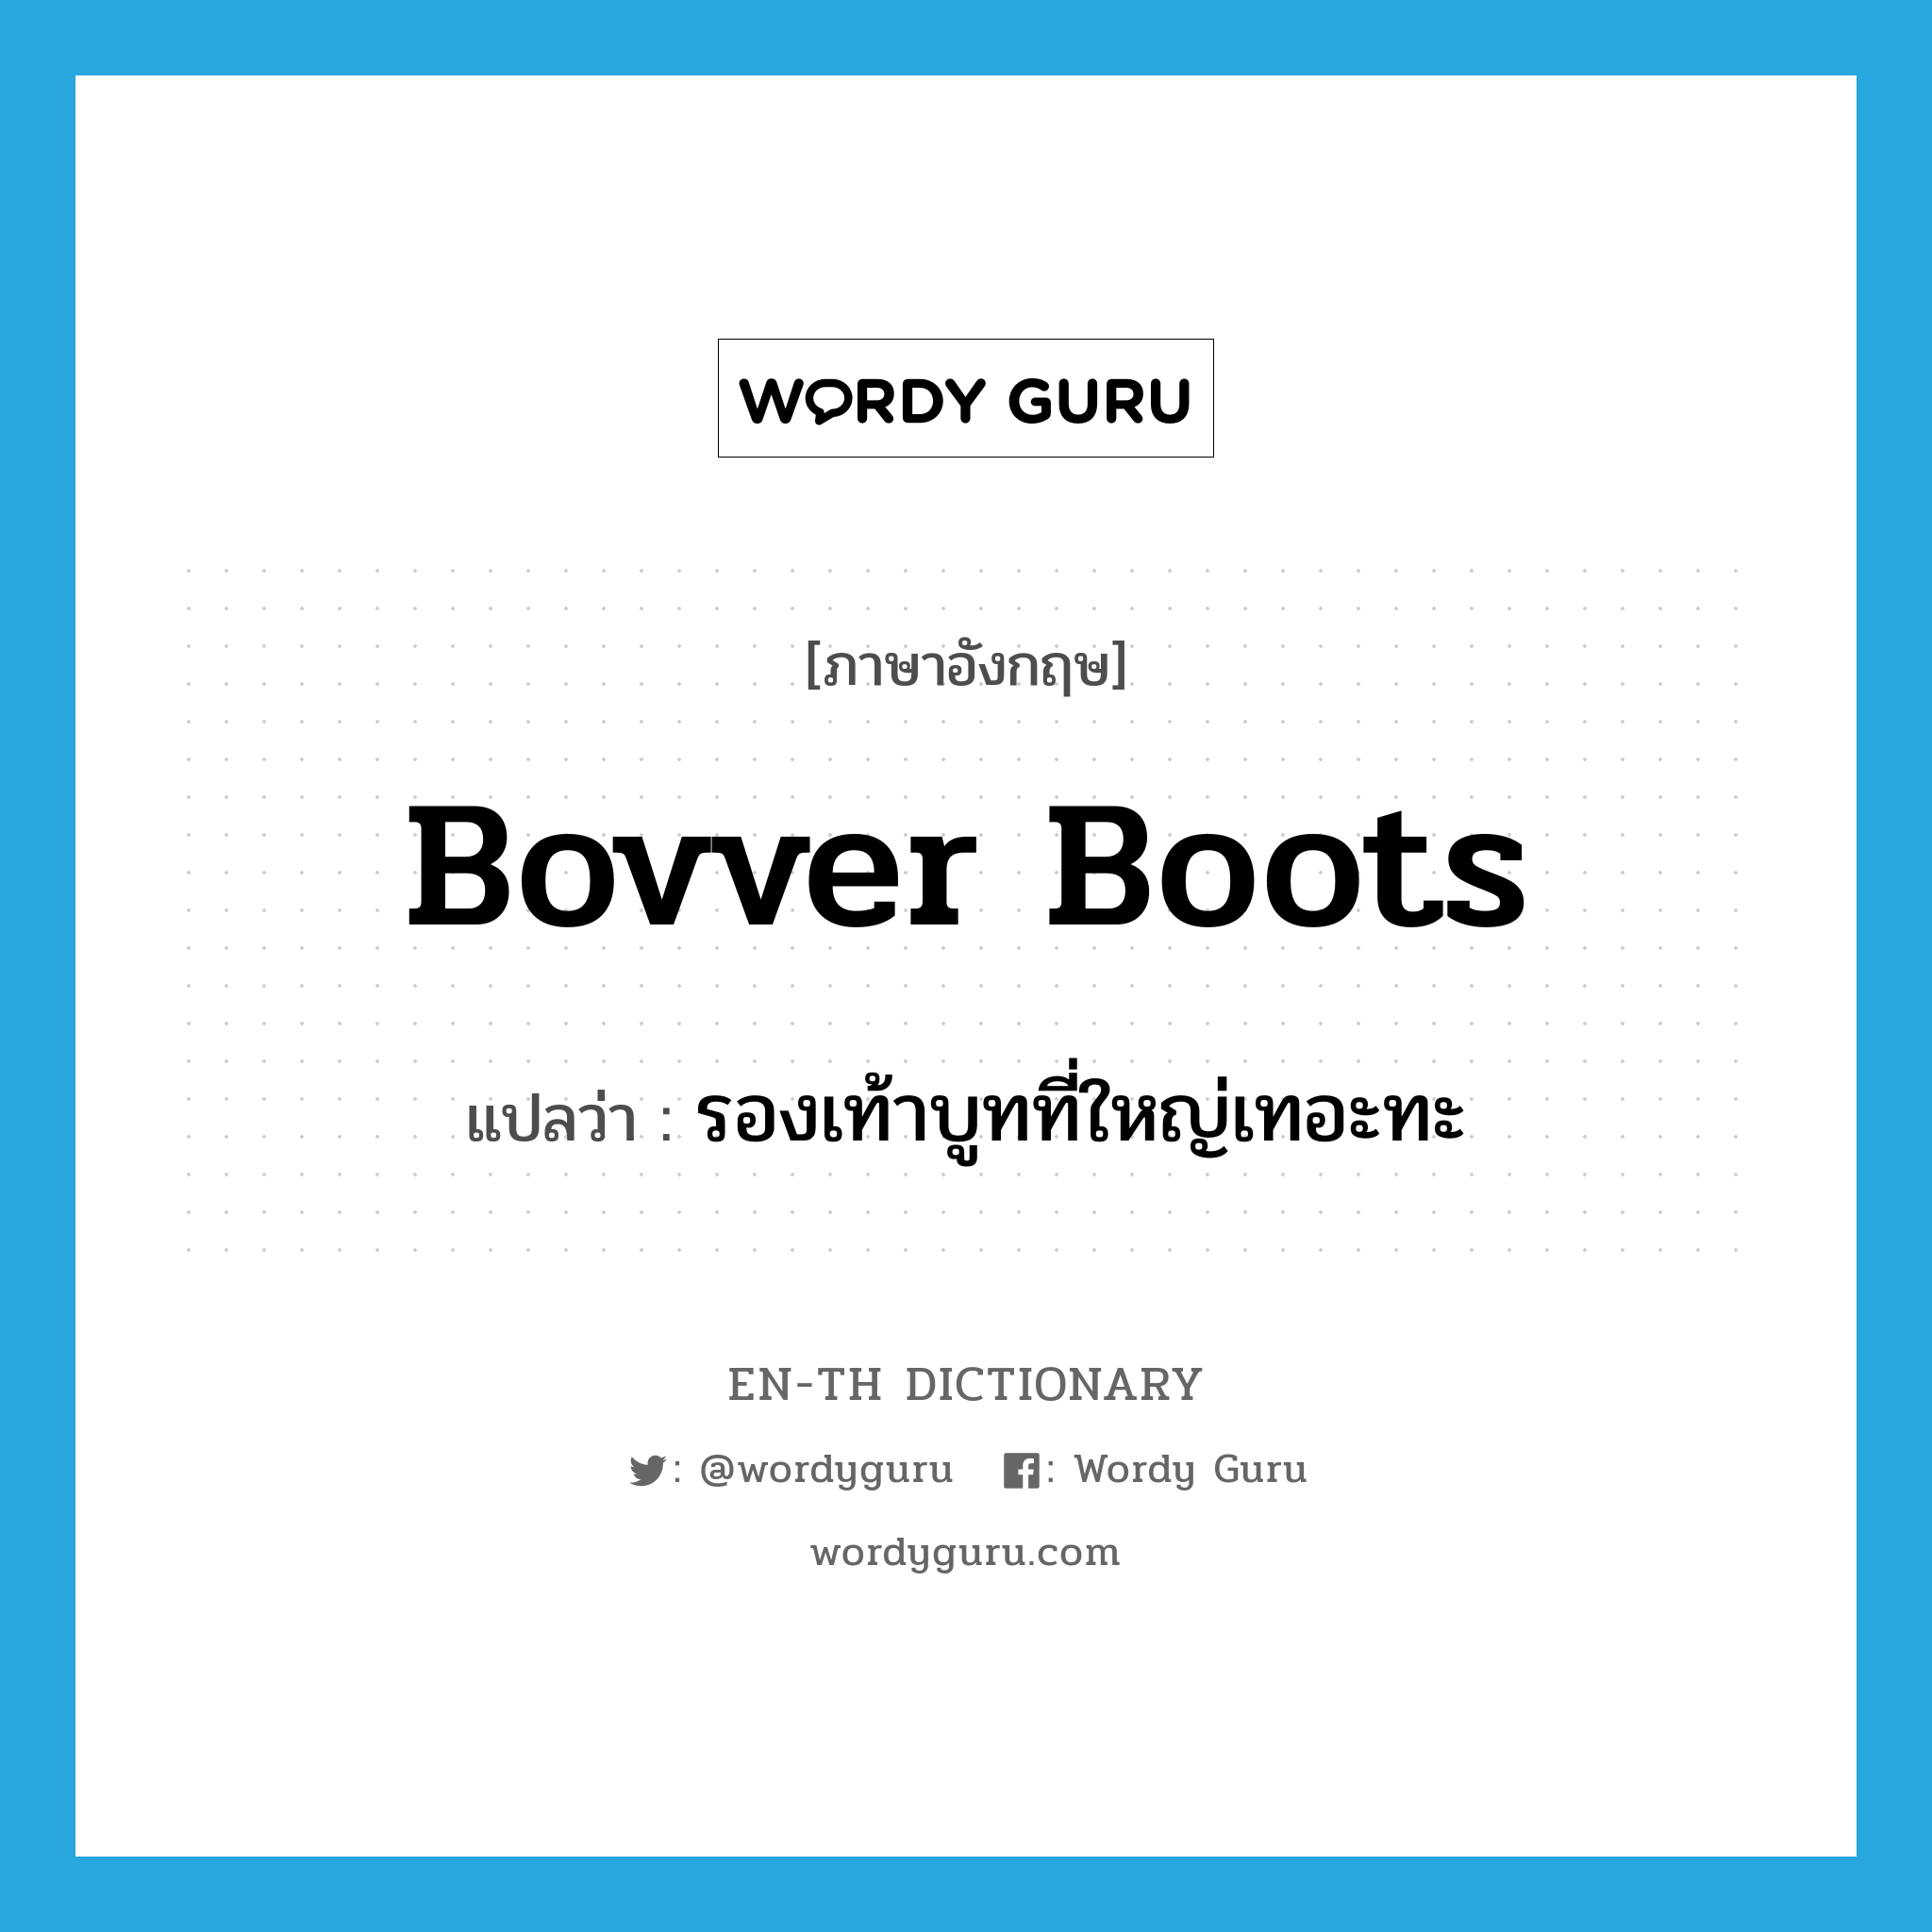 รองเท้าบูทที่ใหญ่เทอะทะ ภาษาอังกฤษ?, คำศัพท์ภาษาอังกฤษ รองเท้าบูทที่ใหญ่เทอะทะ แปลว่า bovver boots ประเภท SL หมวด SL